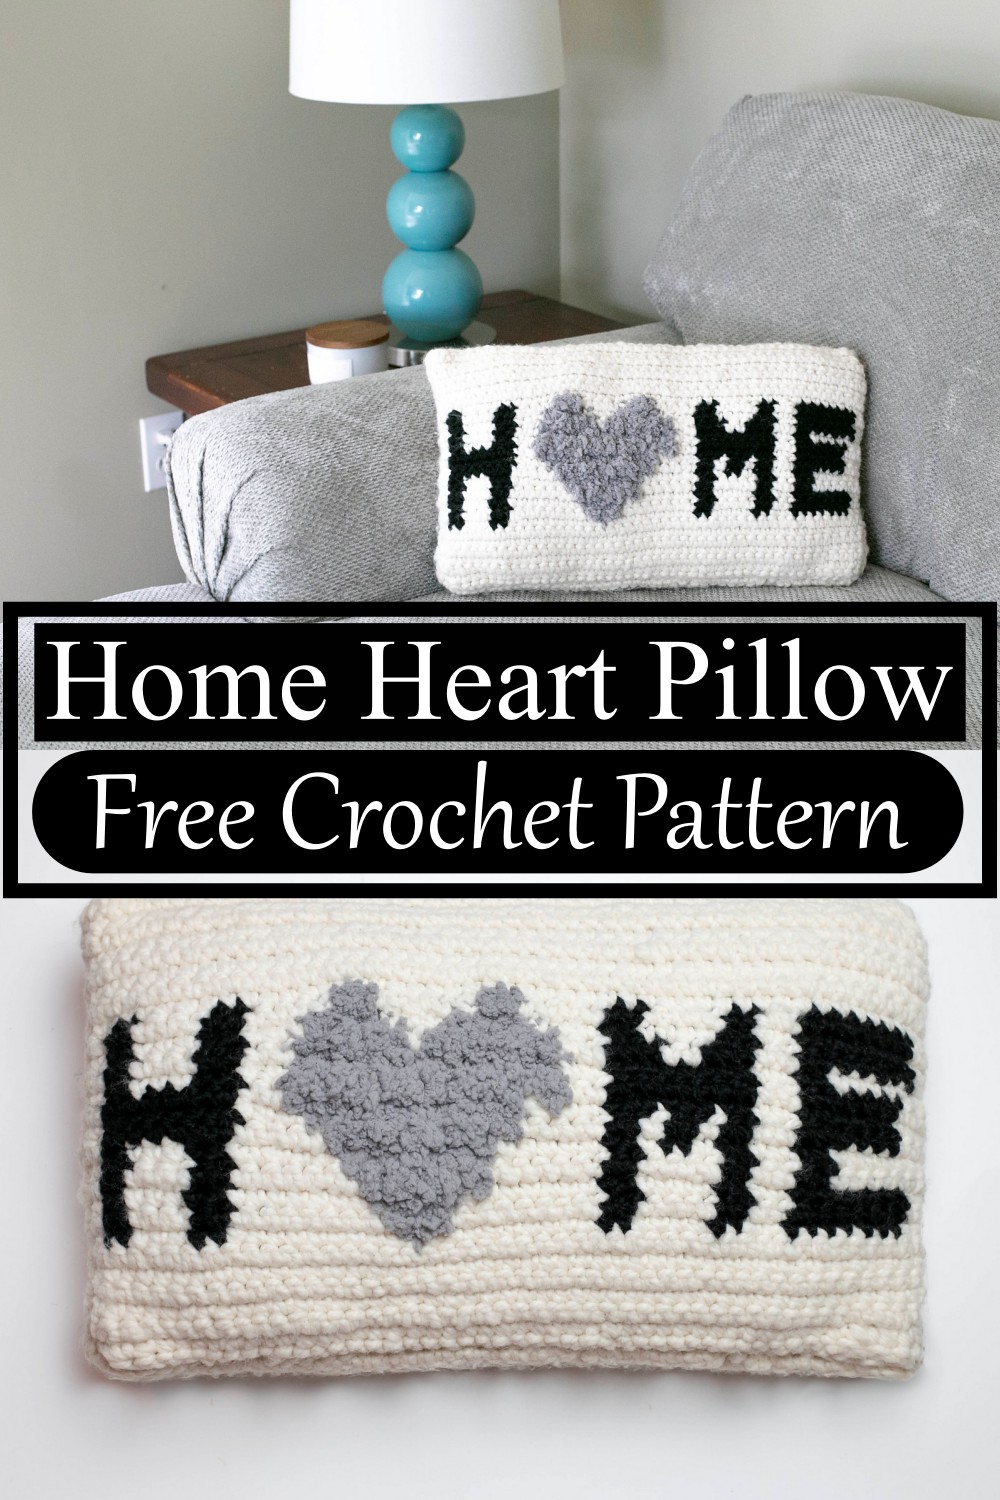 Home Heart Pillow